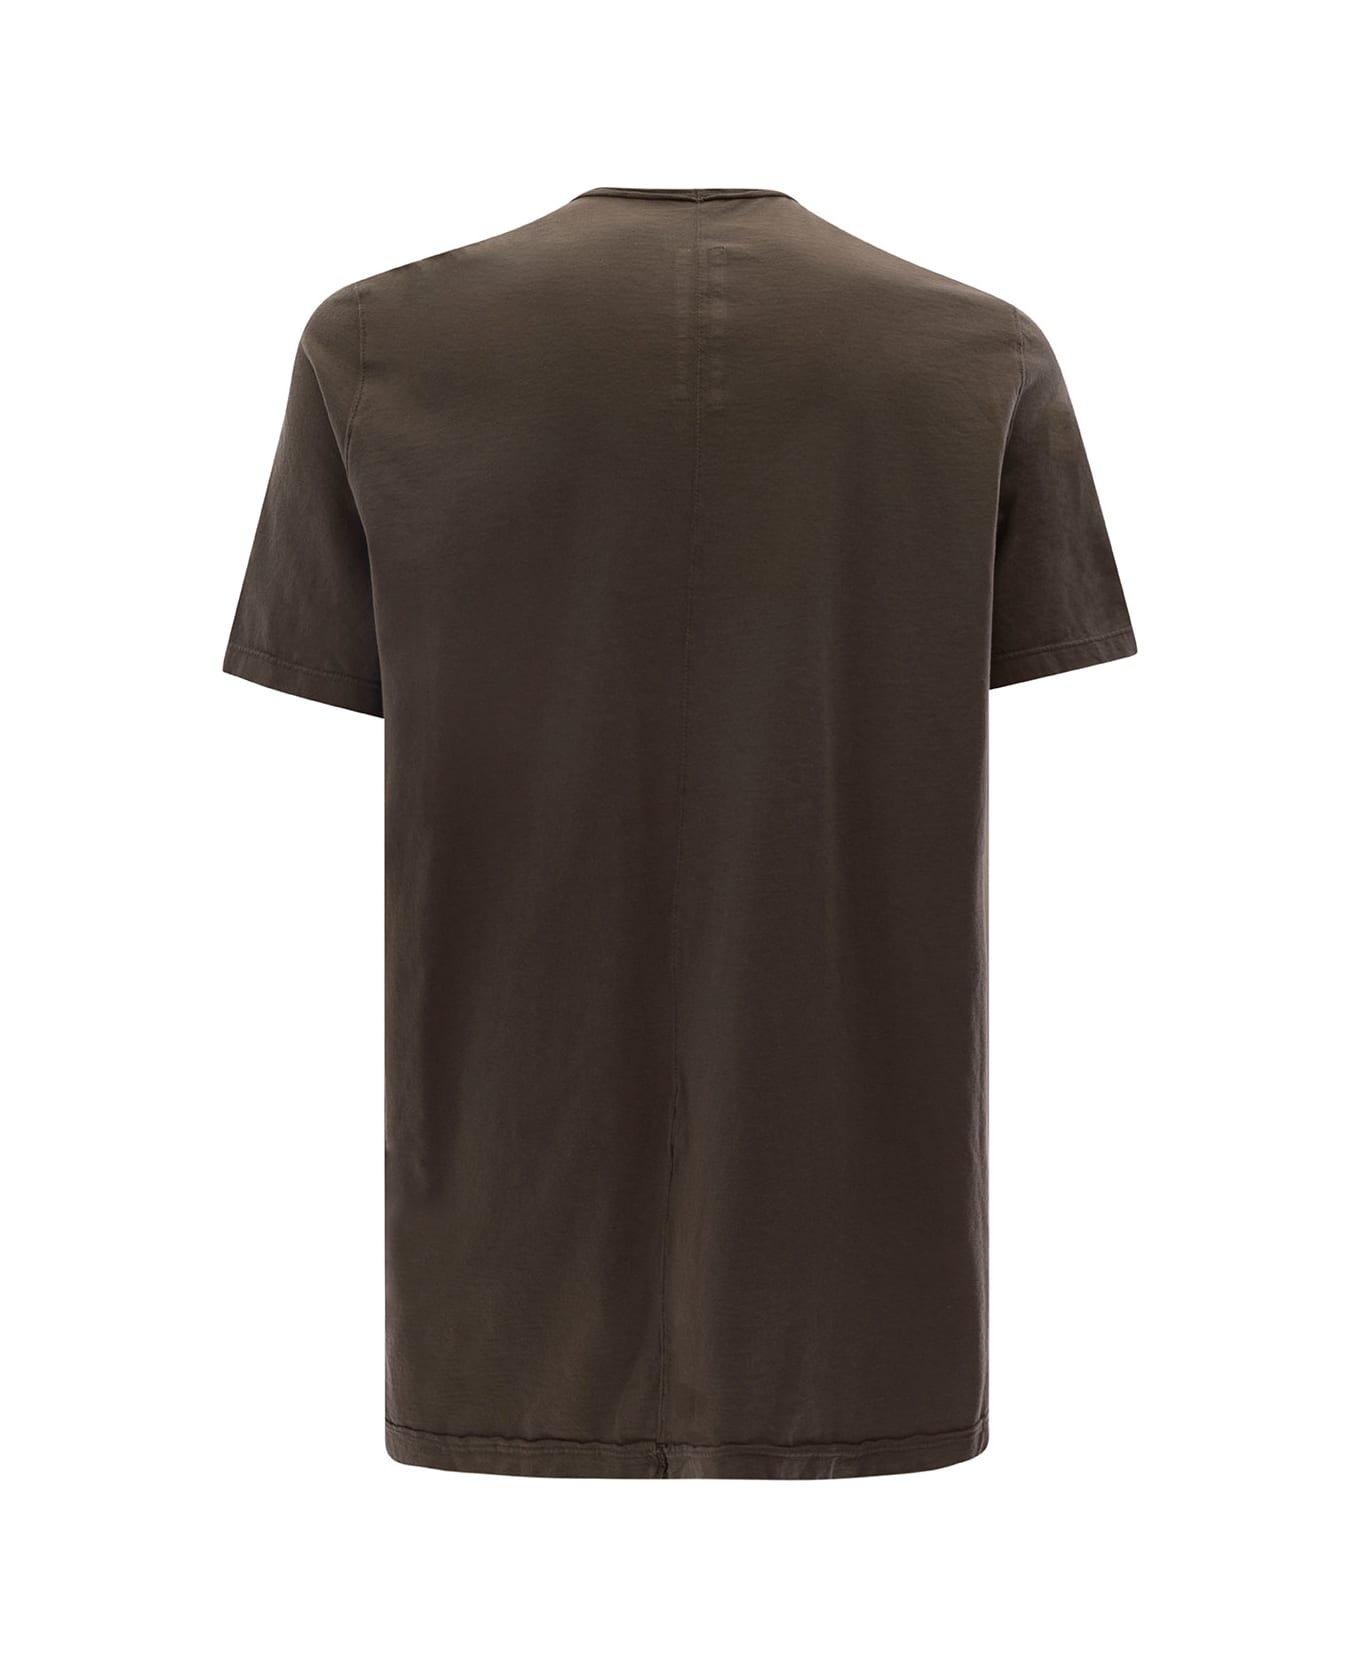 DRKSHDW Brown Round Neck T-shirt In Cotton Man - Brown